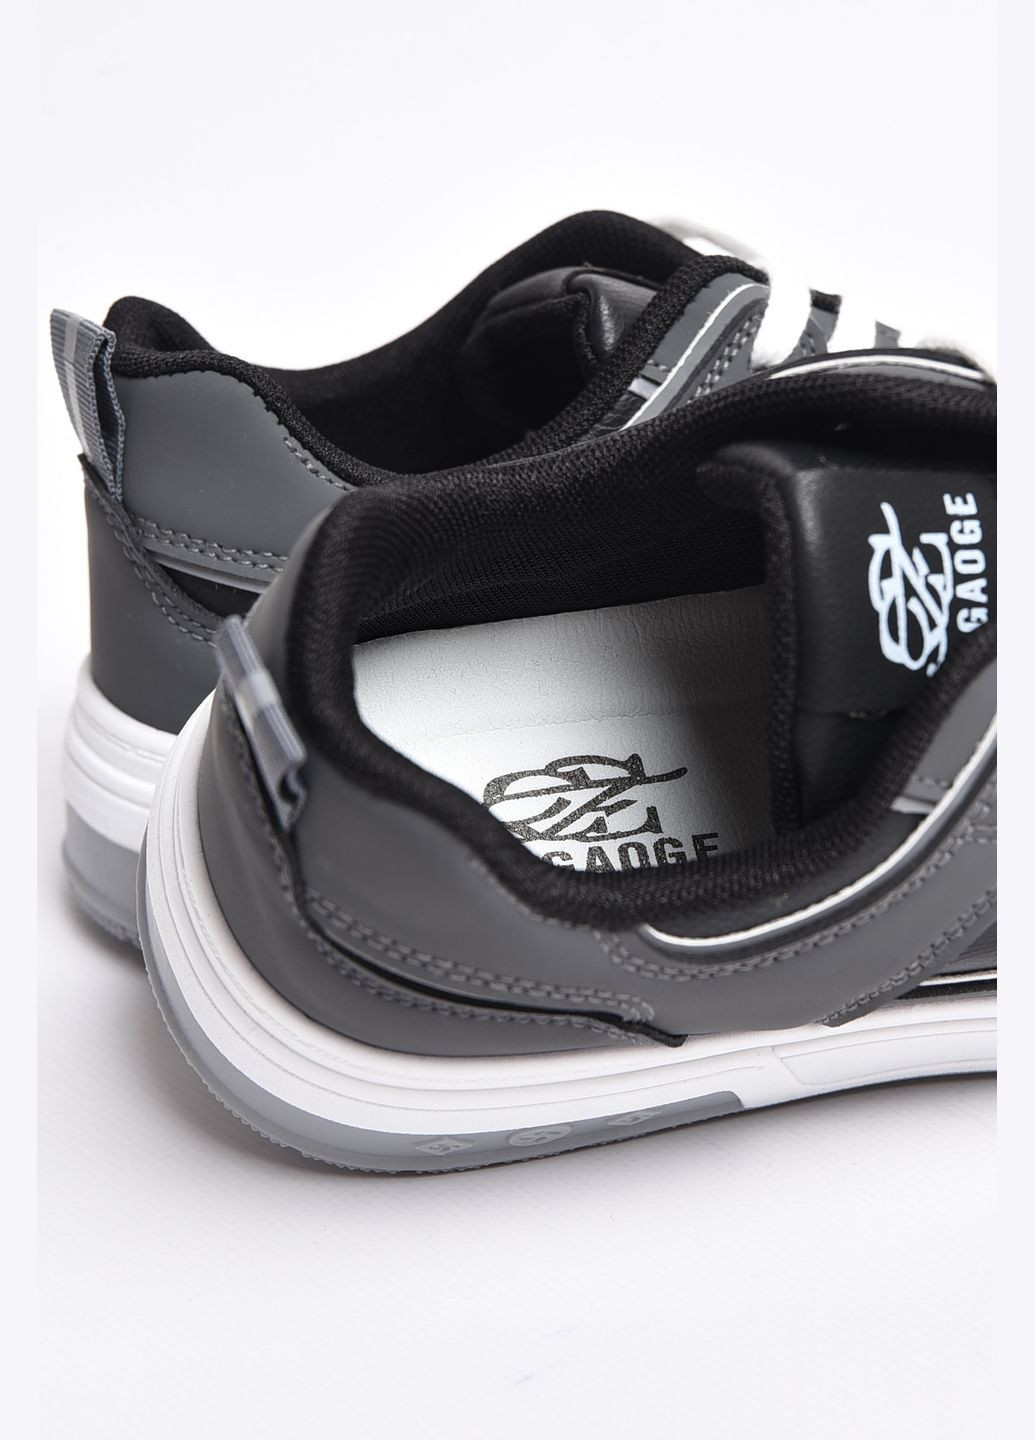 Чорно-білі Осінні кросівки чоловічі чорно-білого кольору на шнурівці Let's Shop